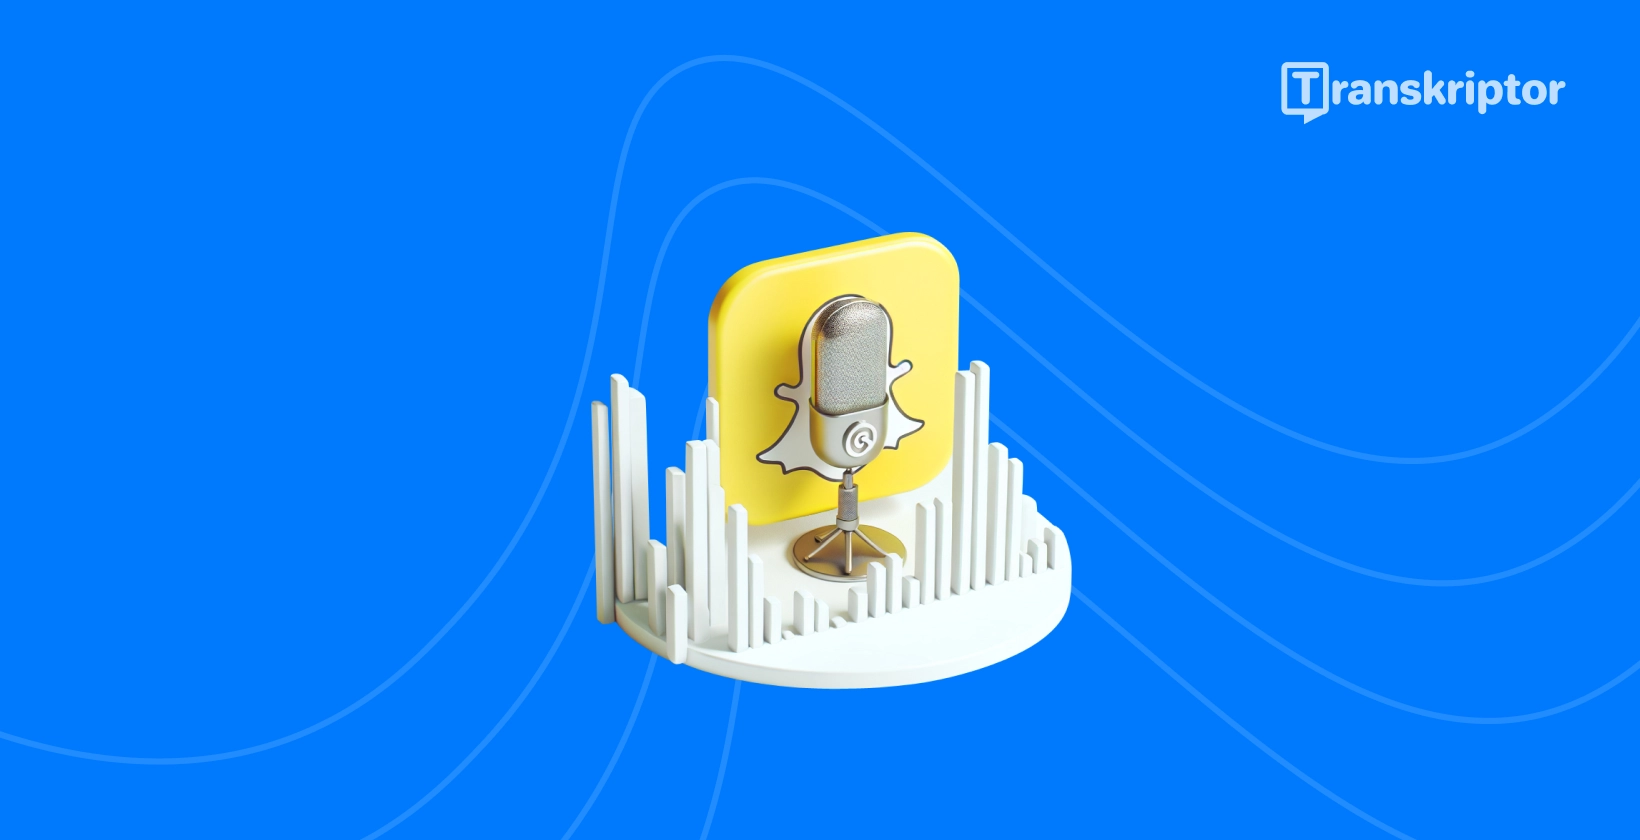 Snapchat pictogramă fantomă și microfon simbolizând ghidul de transcriere audio de Transkriptor.